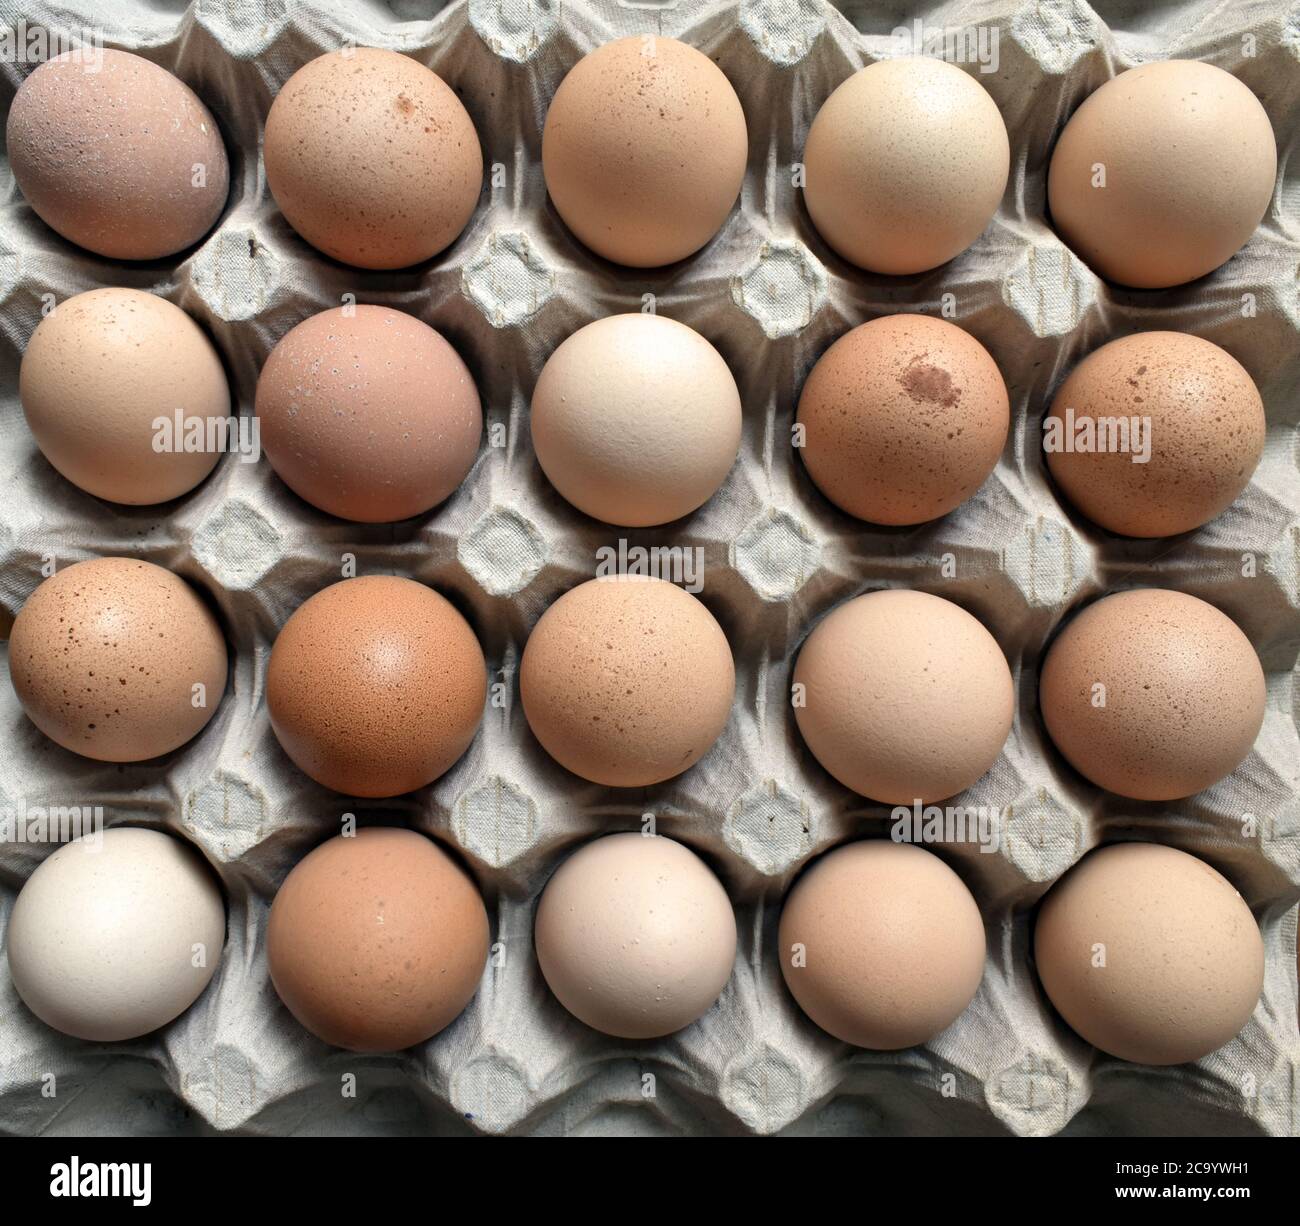 Vingt œufs frais de la ferme Freerange reposent en rangées sur un plateau en carton d'œufs sous la lumière naturelle du jour. Banque D'Images